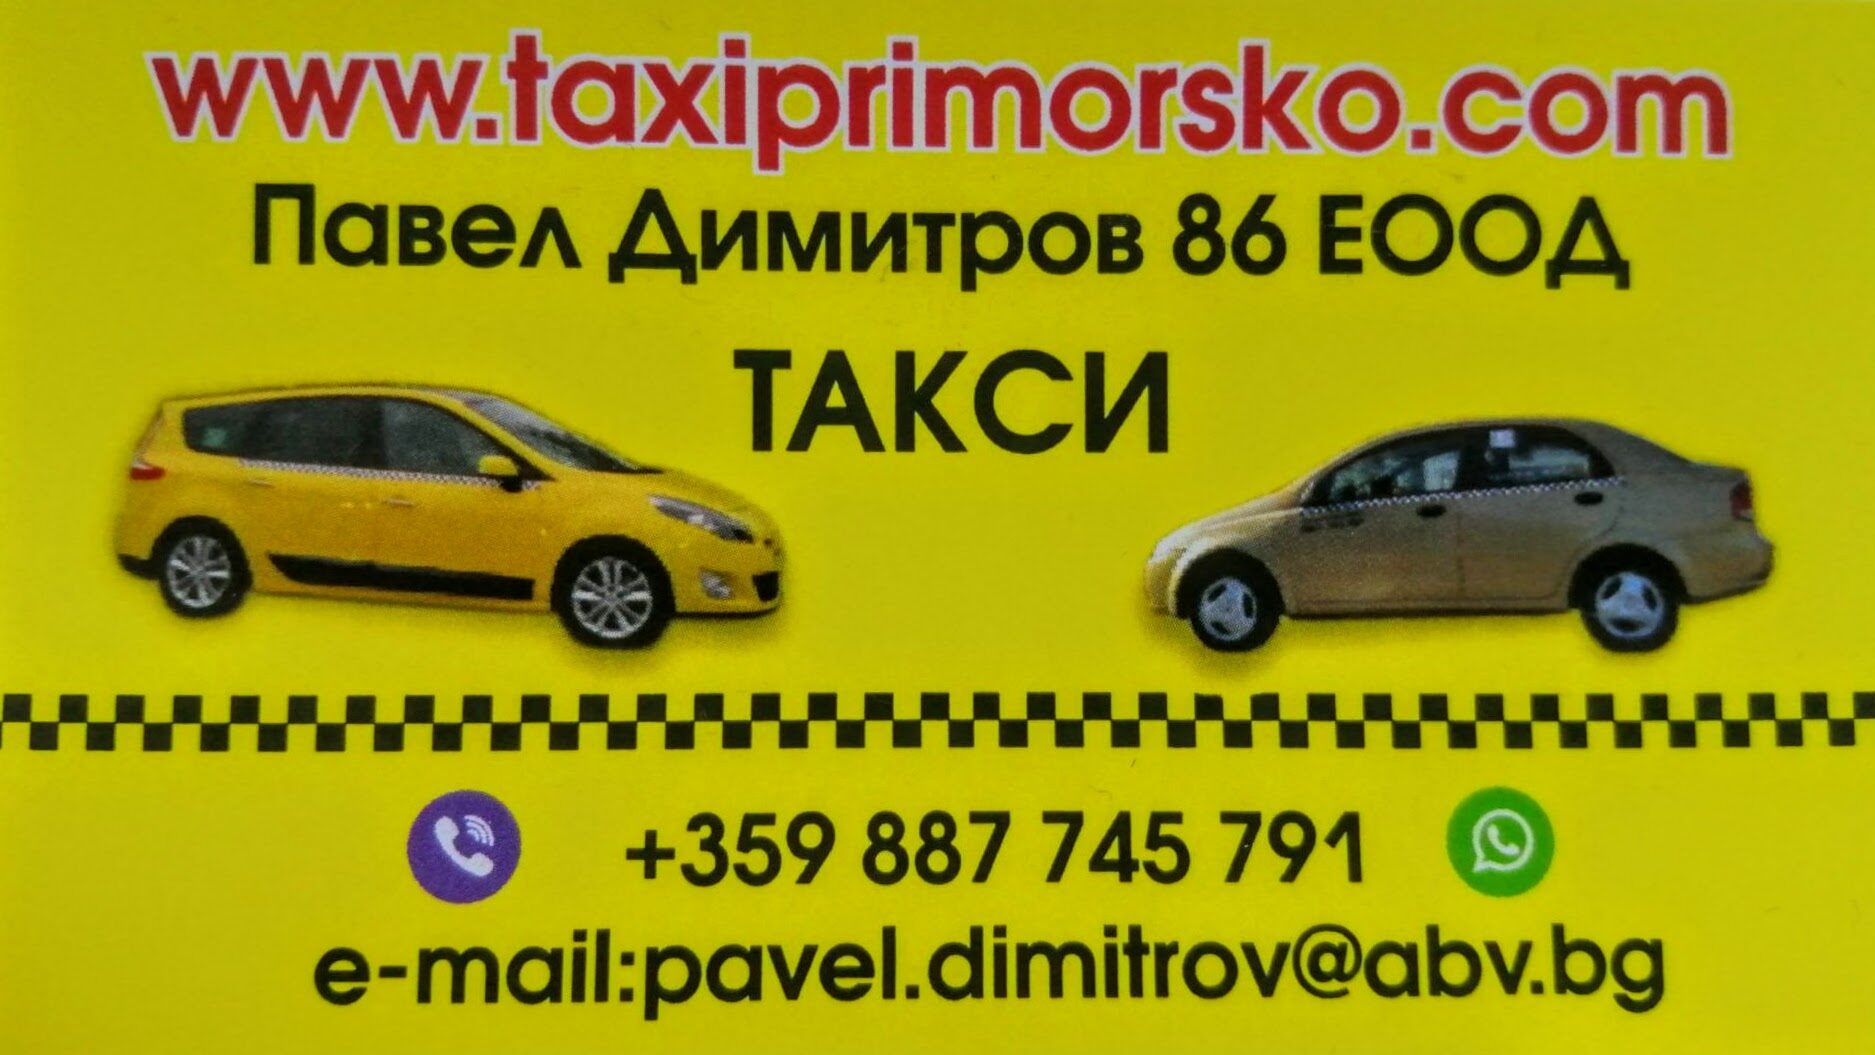 Taxi Primorsko 2